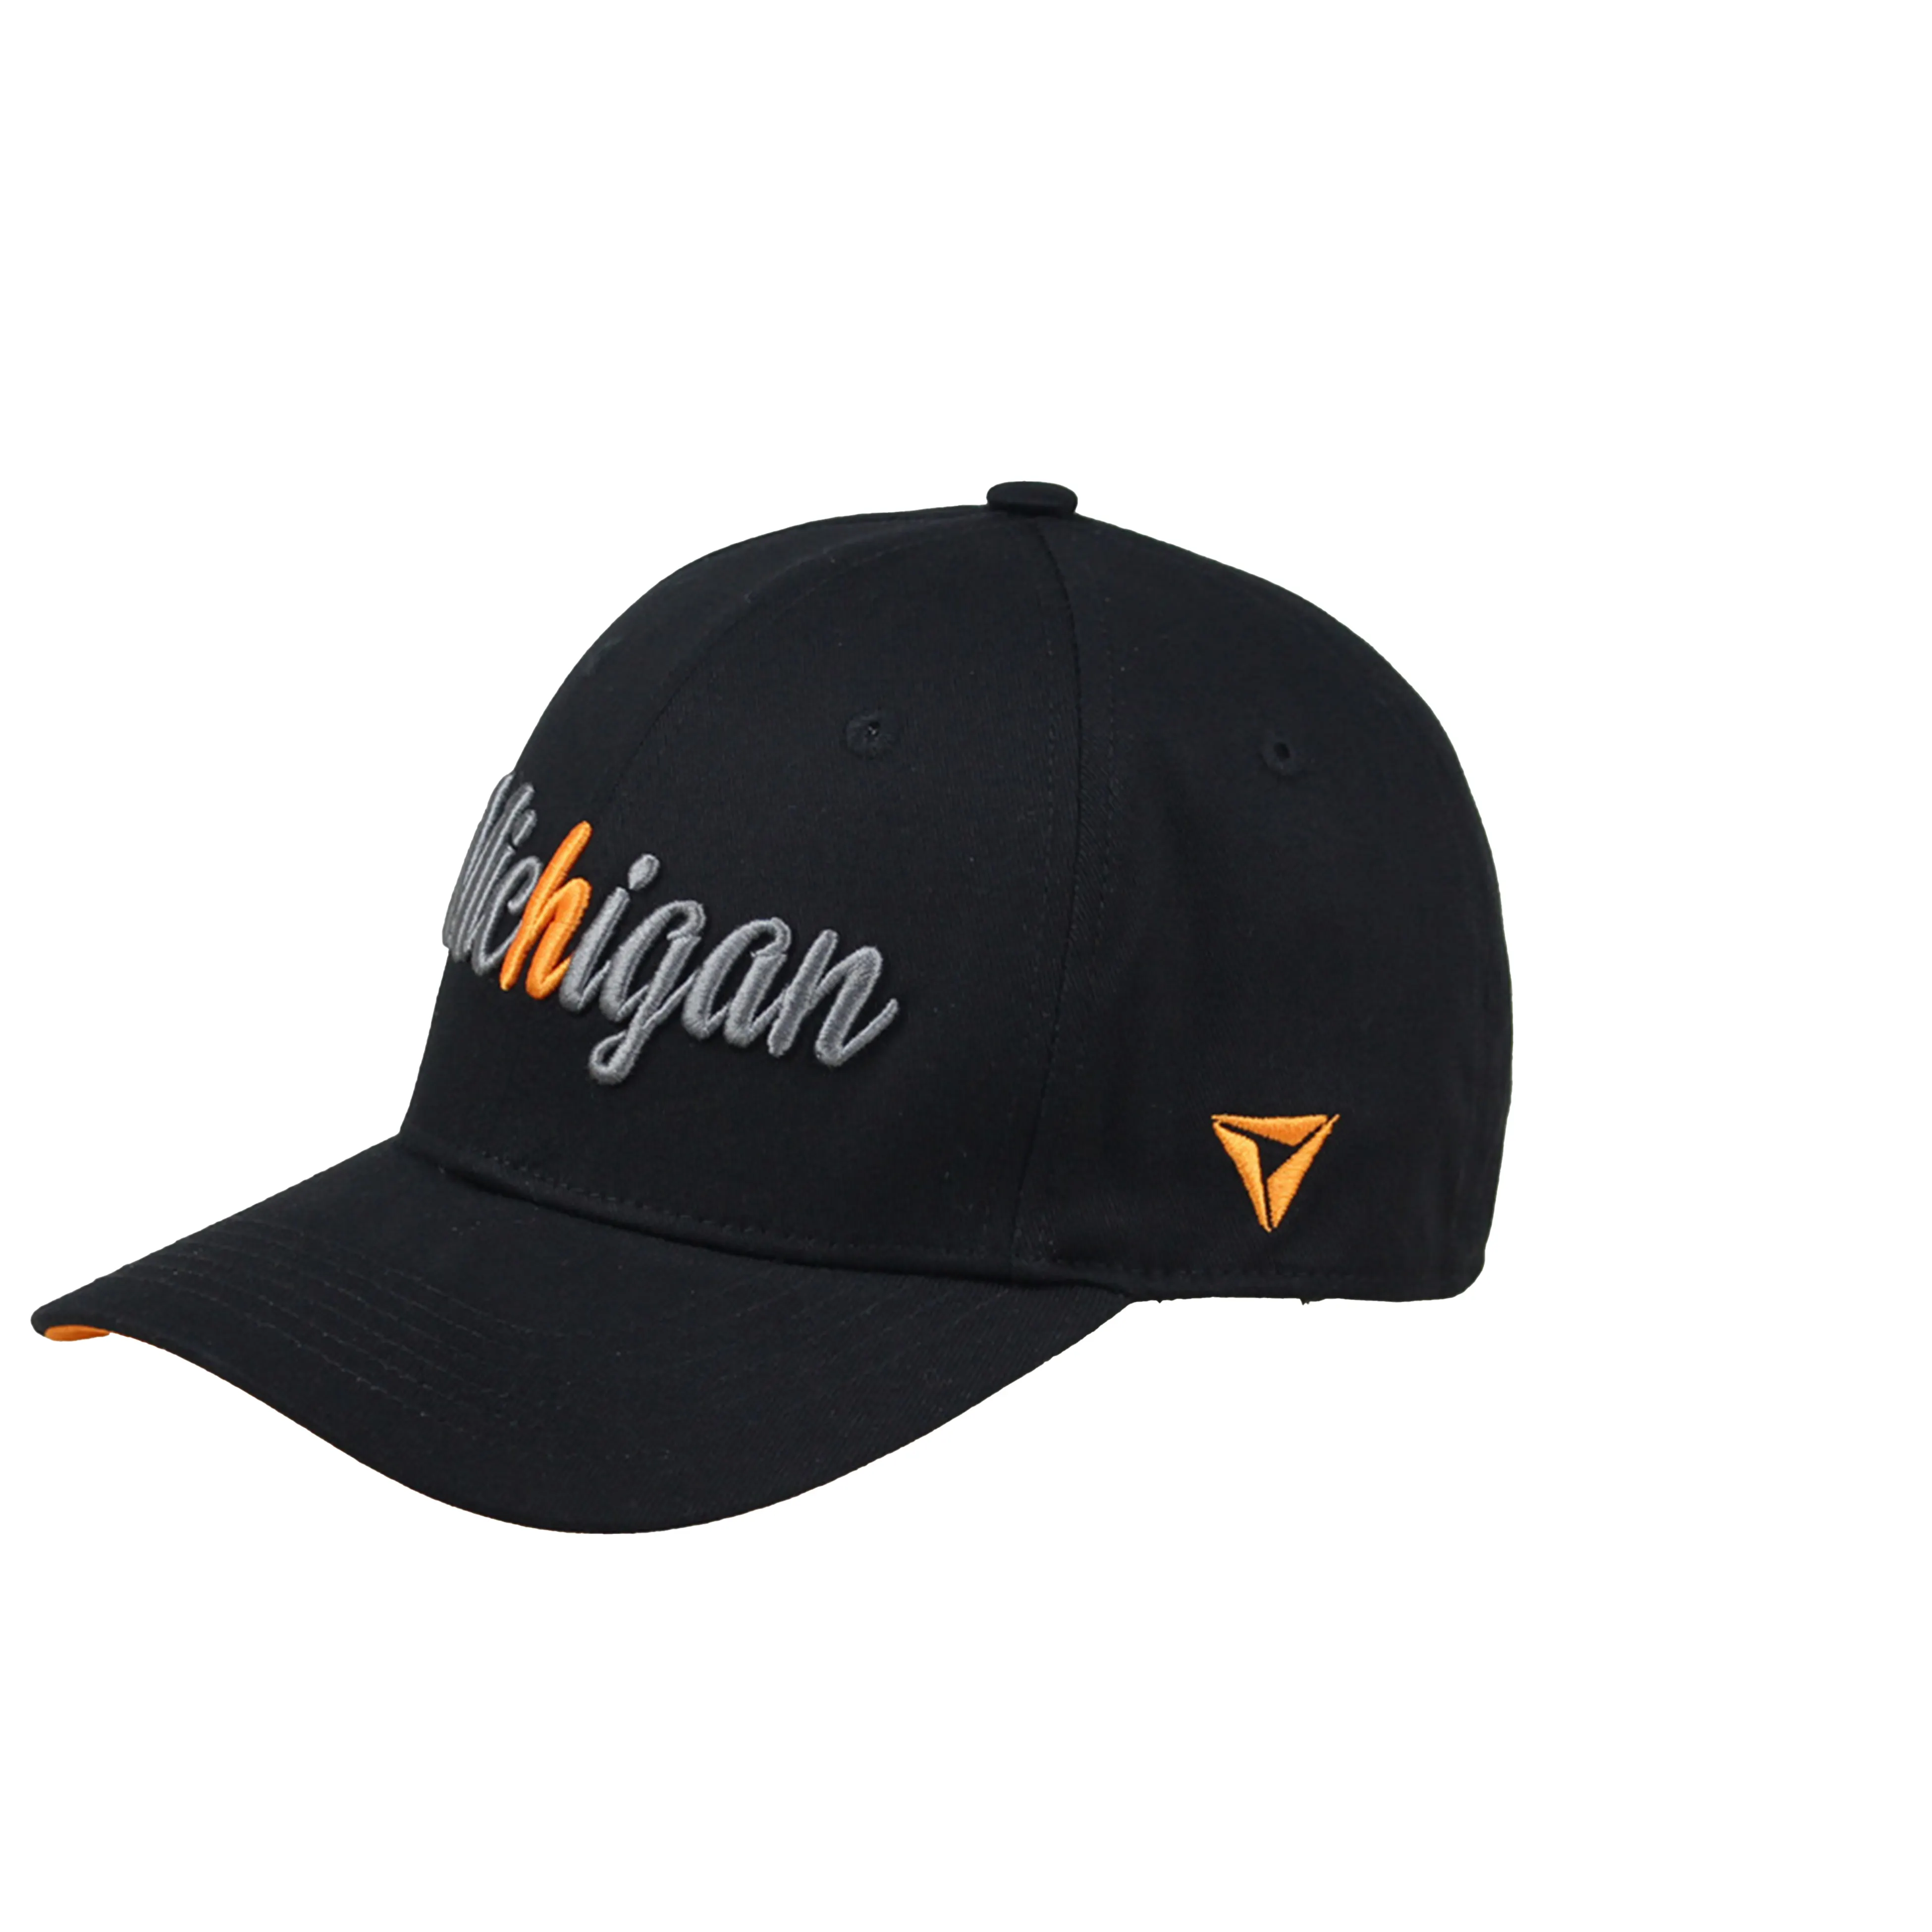 Kustom Logo bordir topi ayah modis grosir topi bisbol dipasang topi olahraga Gorras